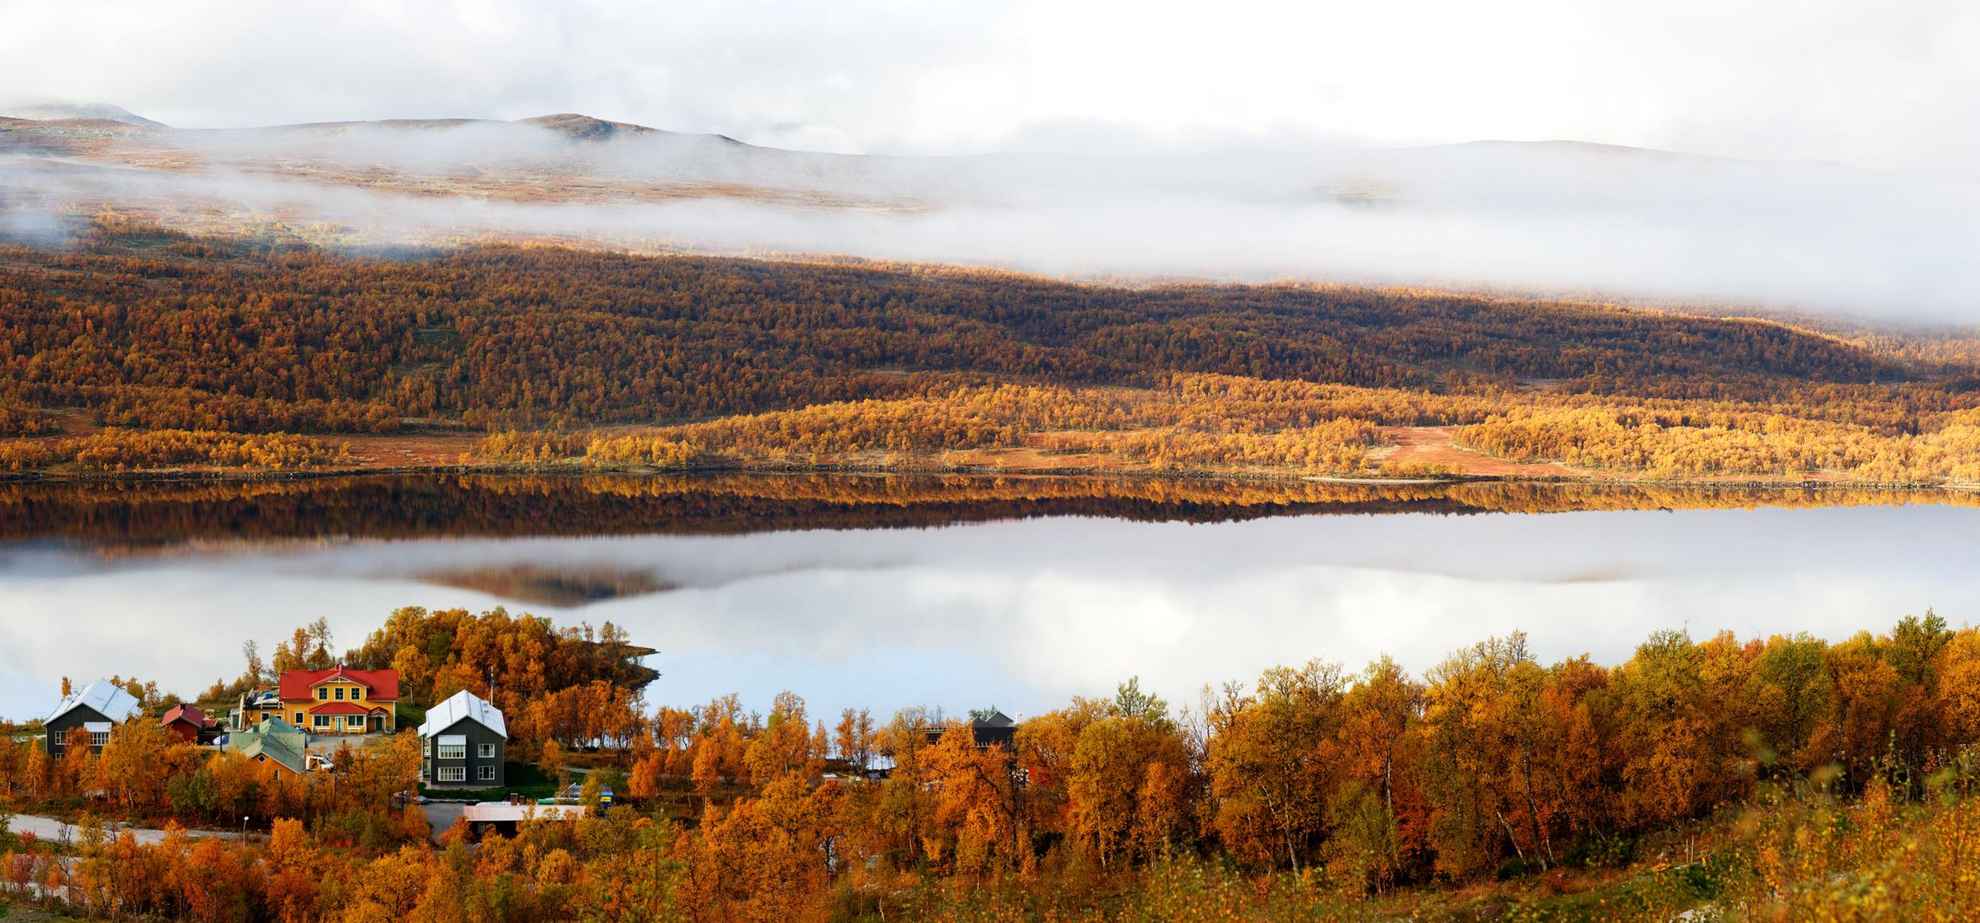 Eine schöne Herbstansicht eines Hotels an einem See in den Bergen. Die Bäume sind orange und auf der anderen Seite des Sees liegt Nebel über dem Berg.